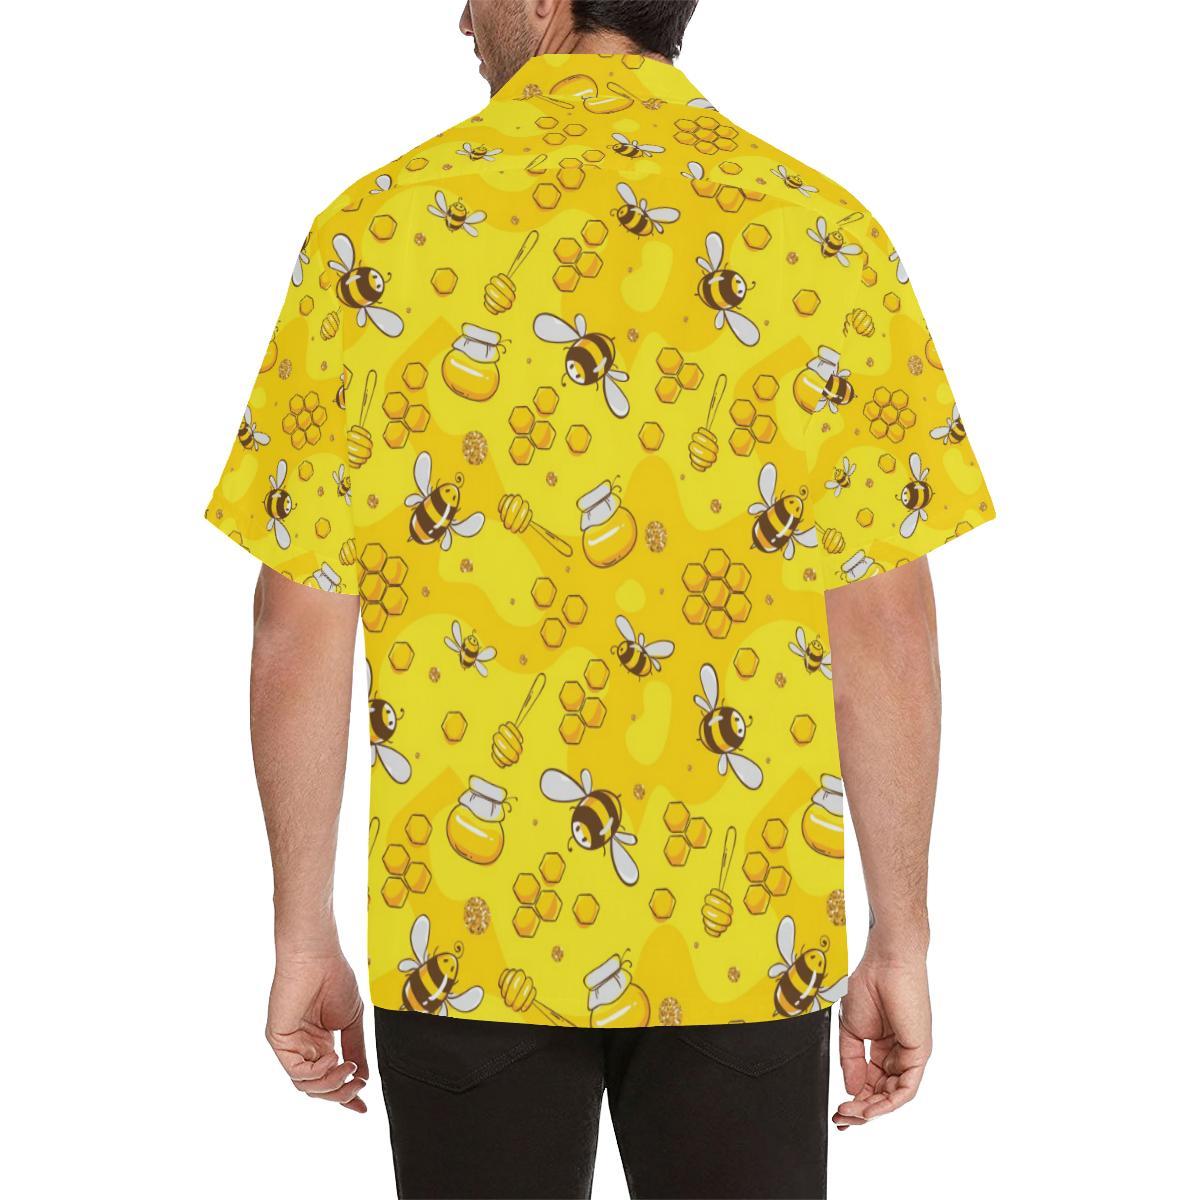 Bee Pattern Print Design BEE01 Men's Hawaiian Shirt - JorJune